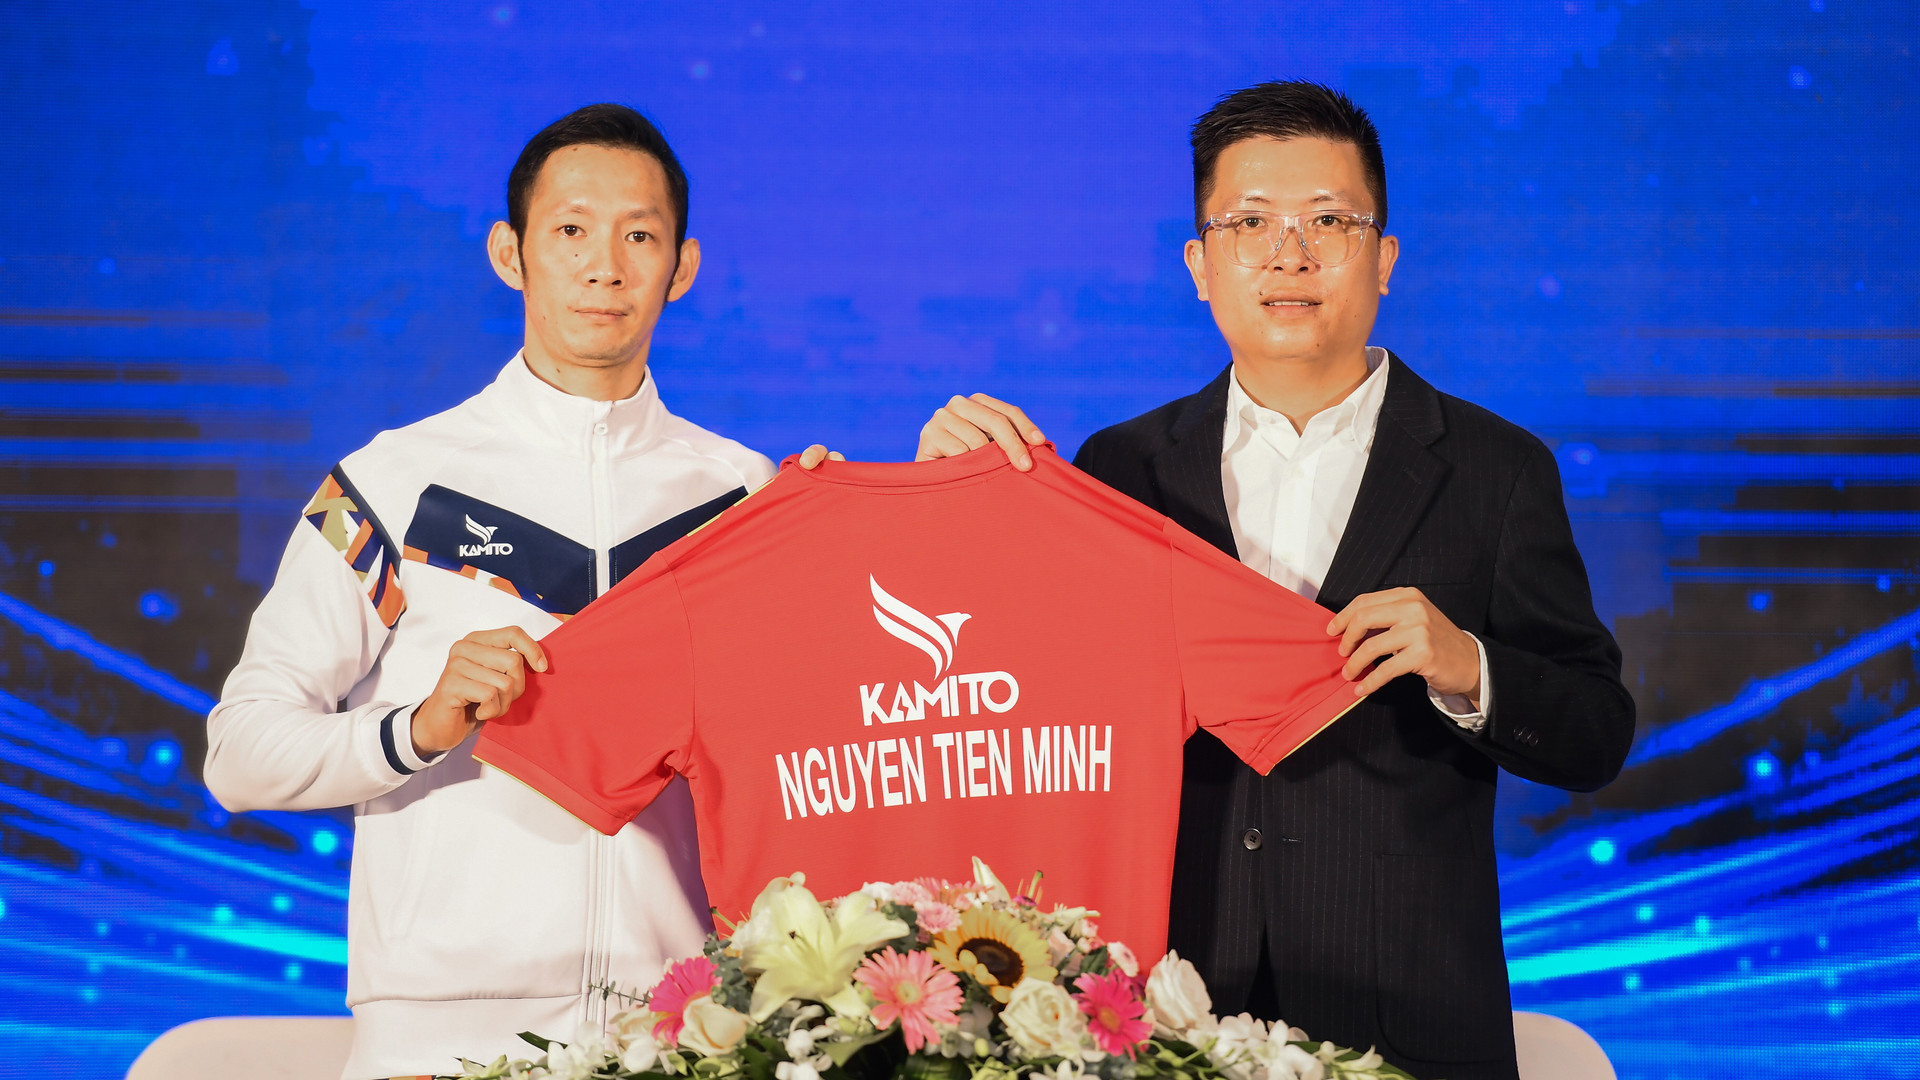 Nguyễn Tiến Minh vẫn thi đấu ở tuổi 40.